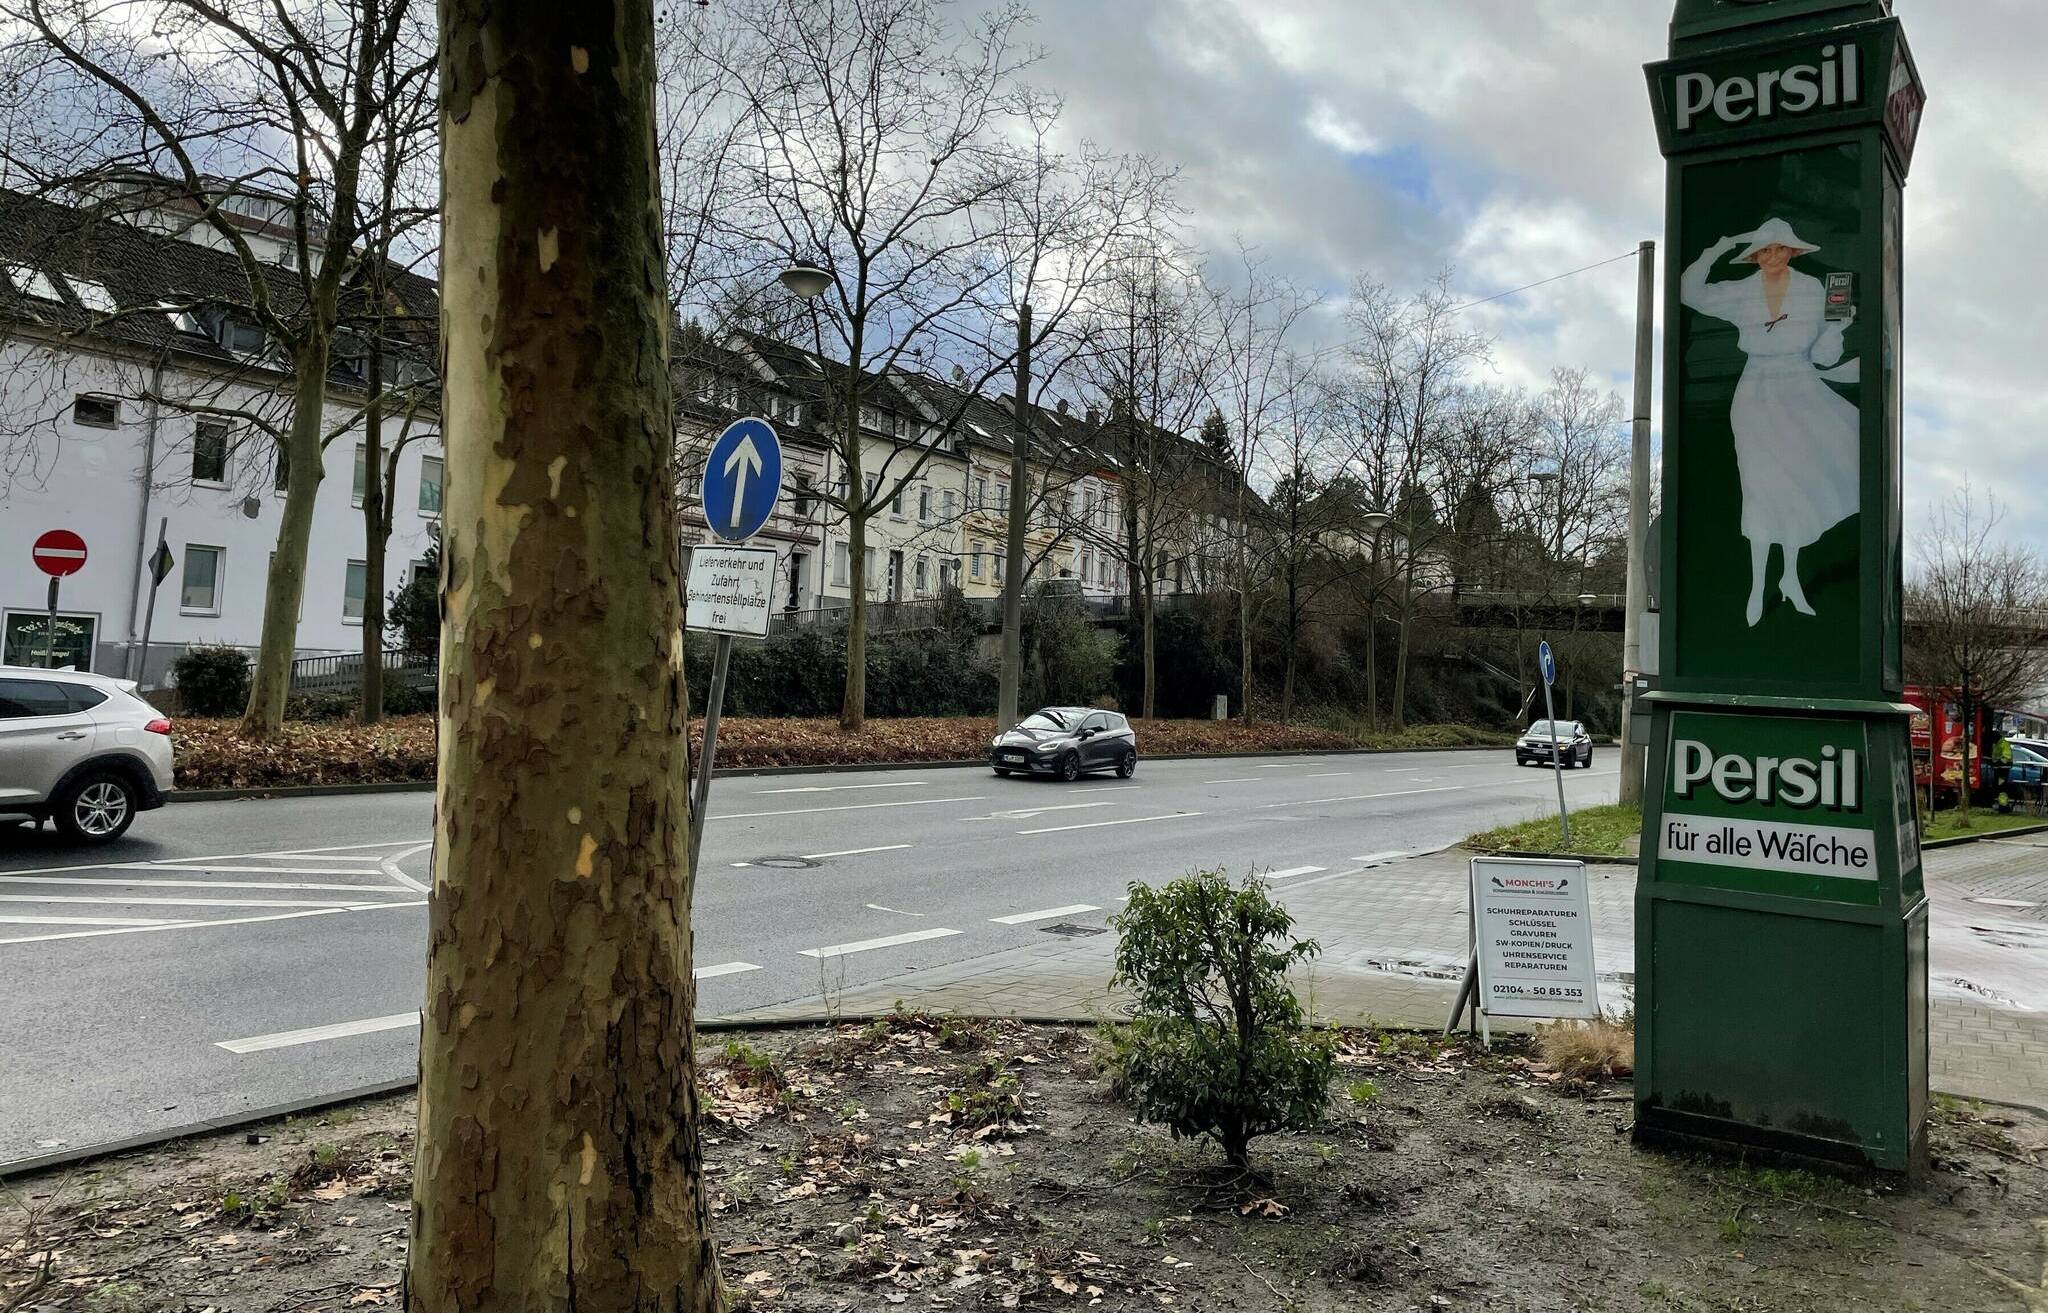  Reparaturbedürftiger Blickfang: die Persil-Uhr an der Talstraße in Mettmann.  